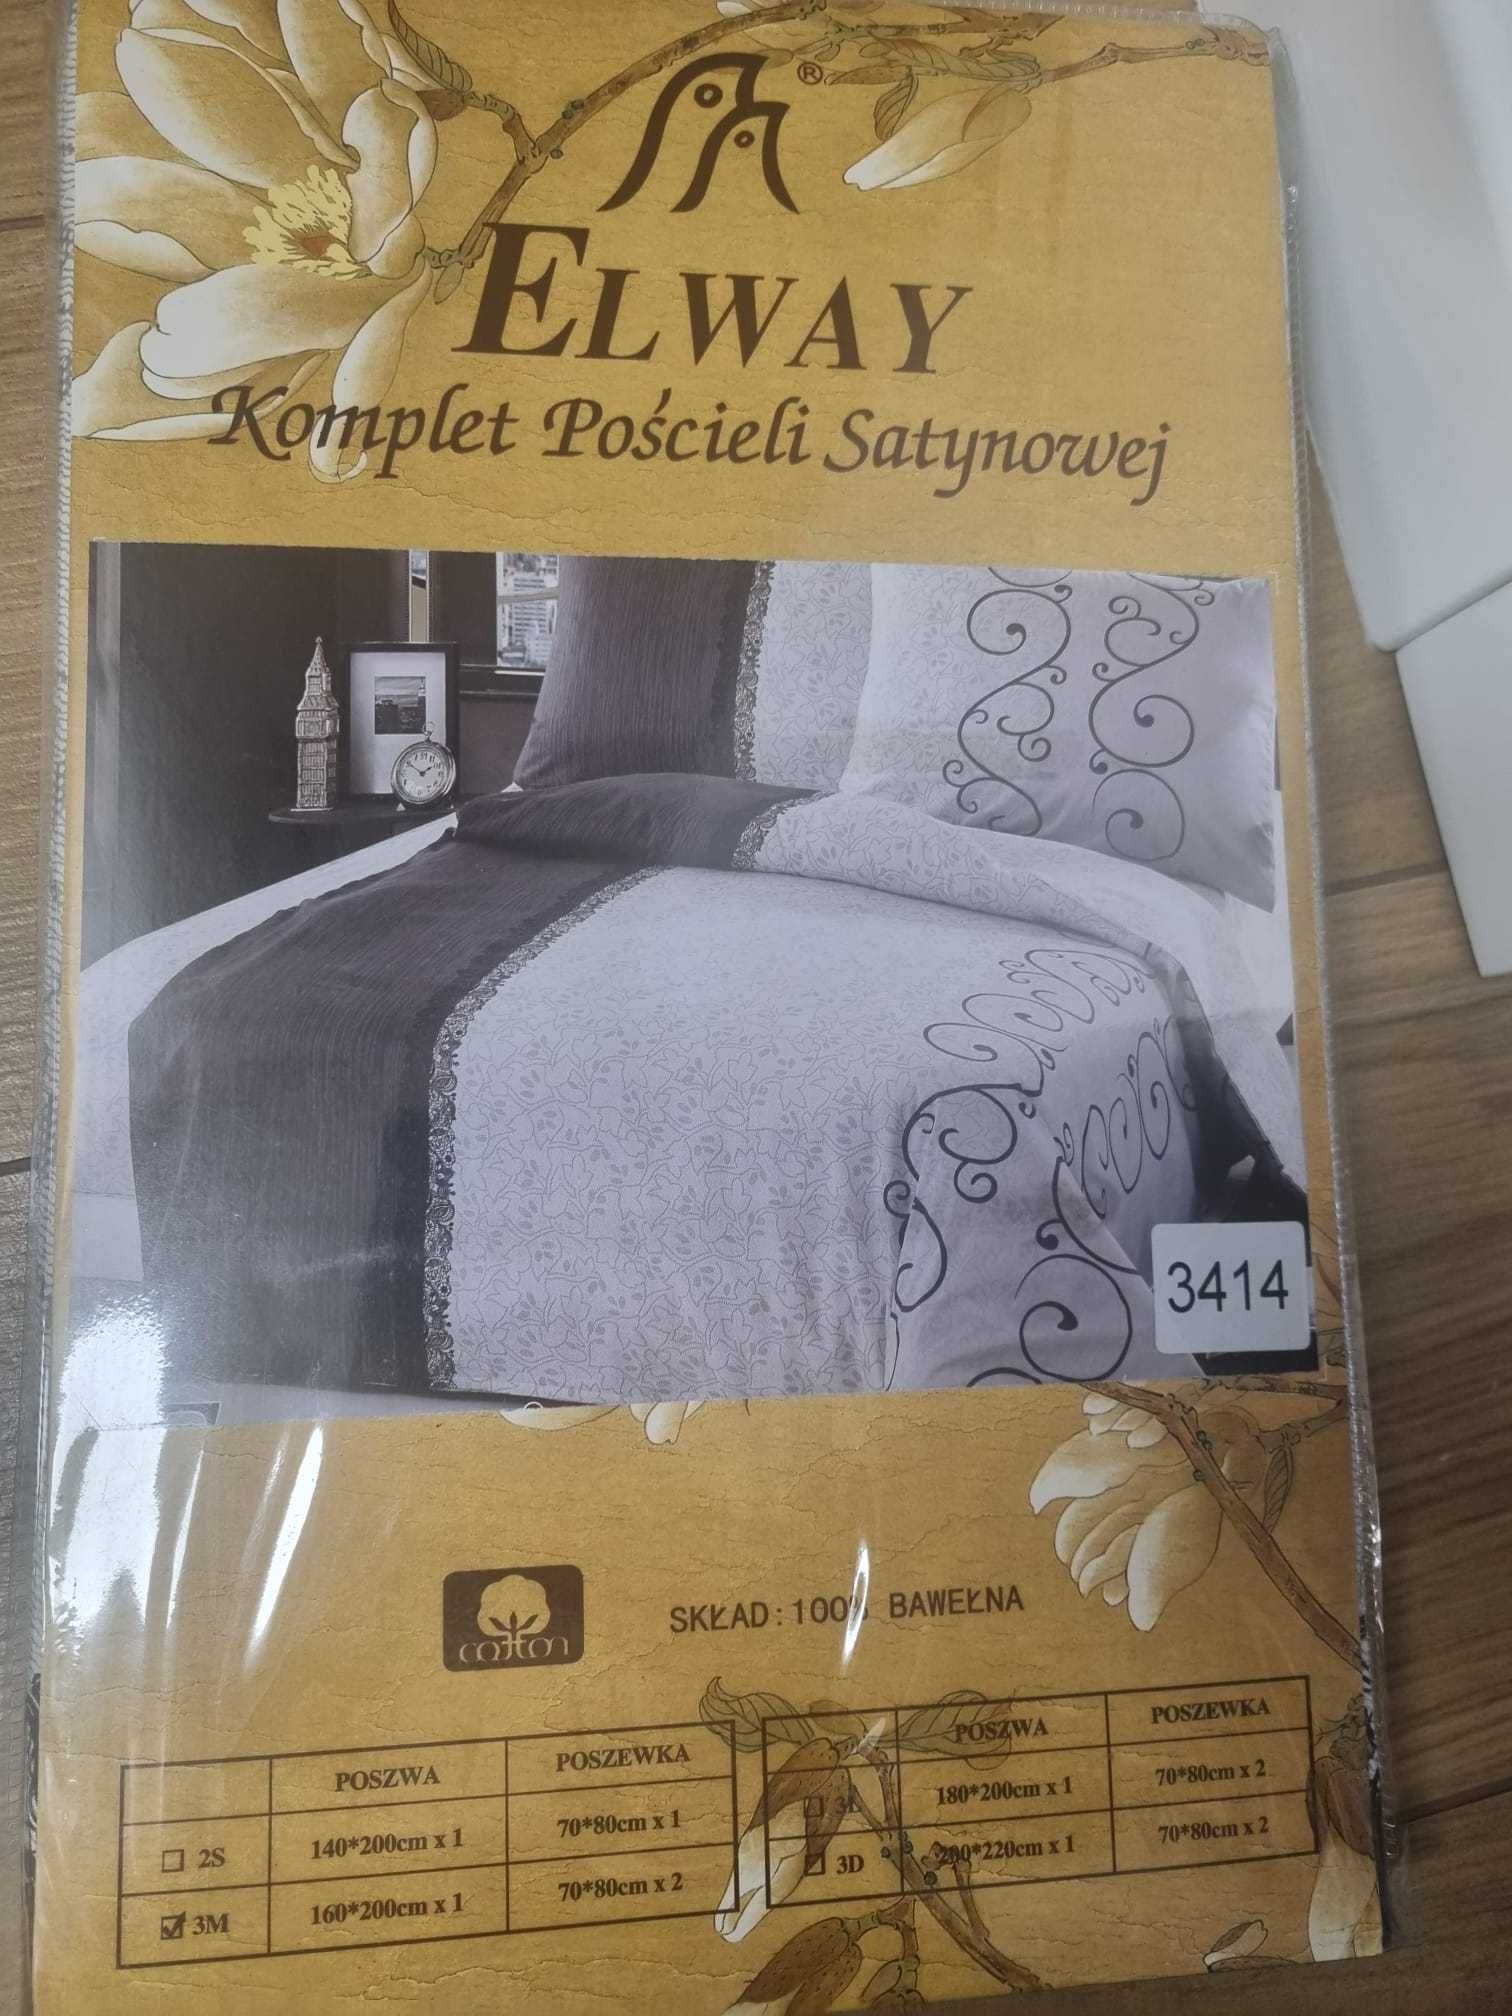 Nowy komplet pościeli satynowej ELWAY 3414 wymiar 160x200 i 2 x 70x80